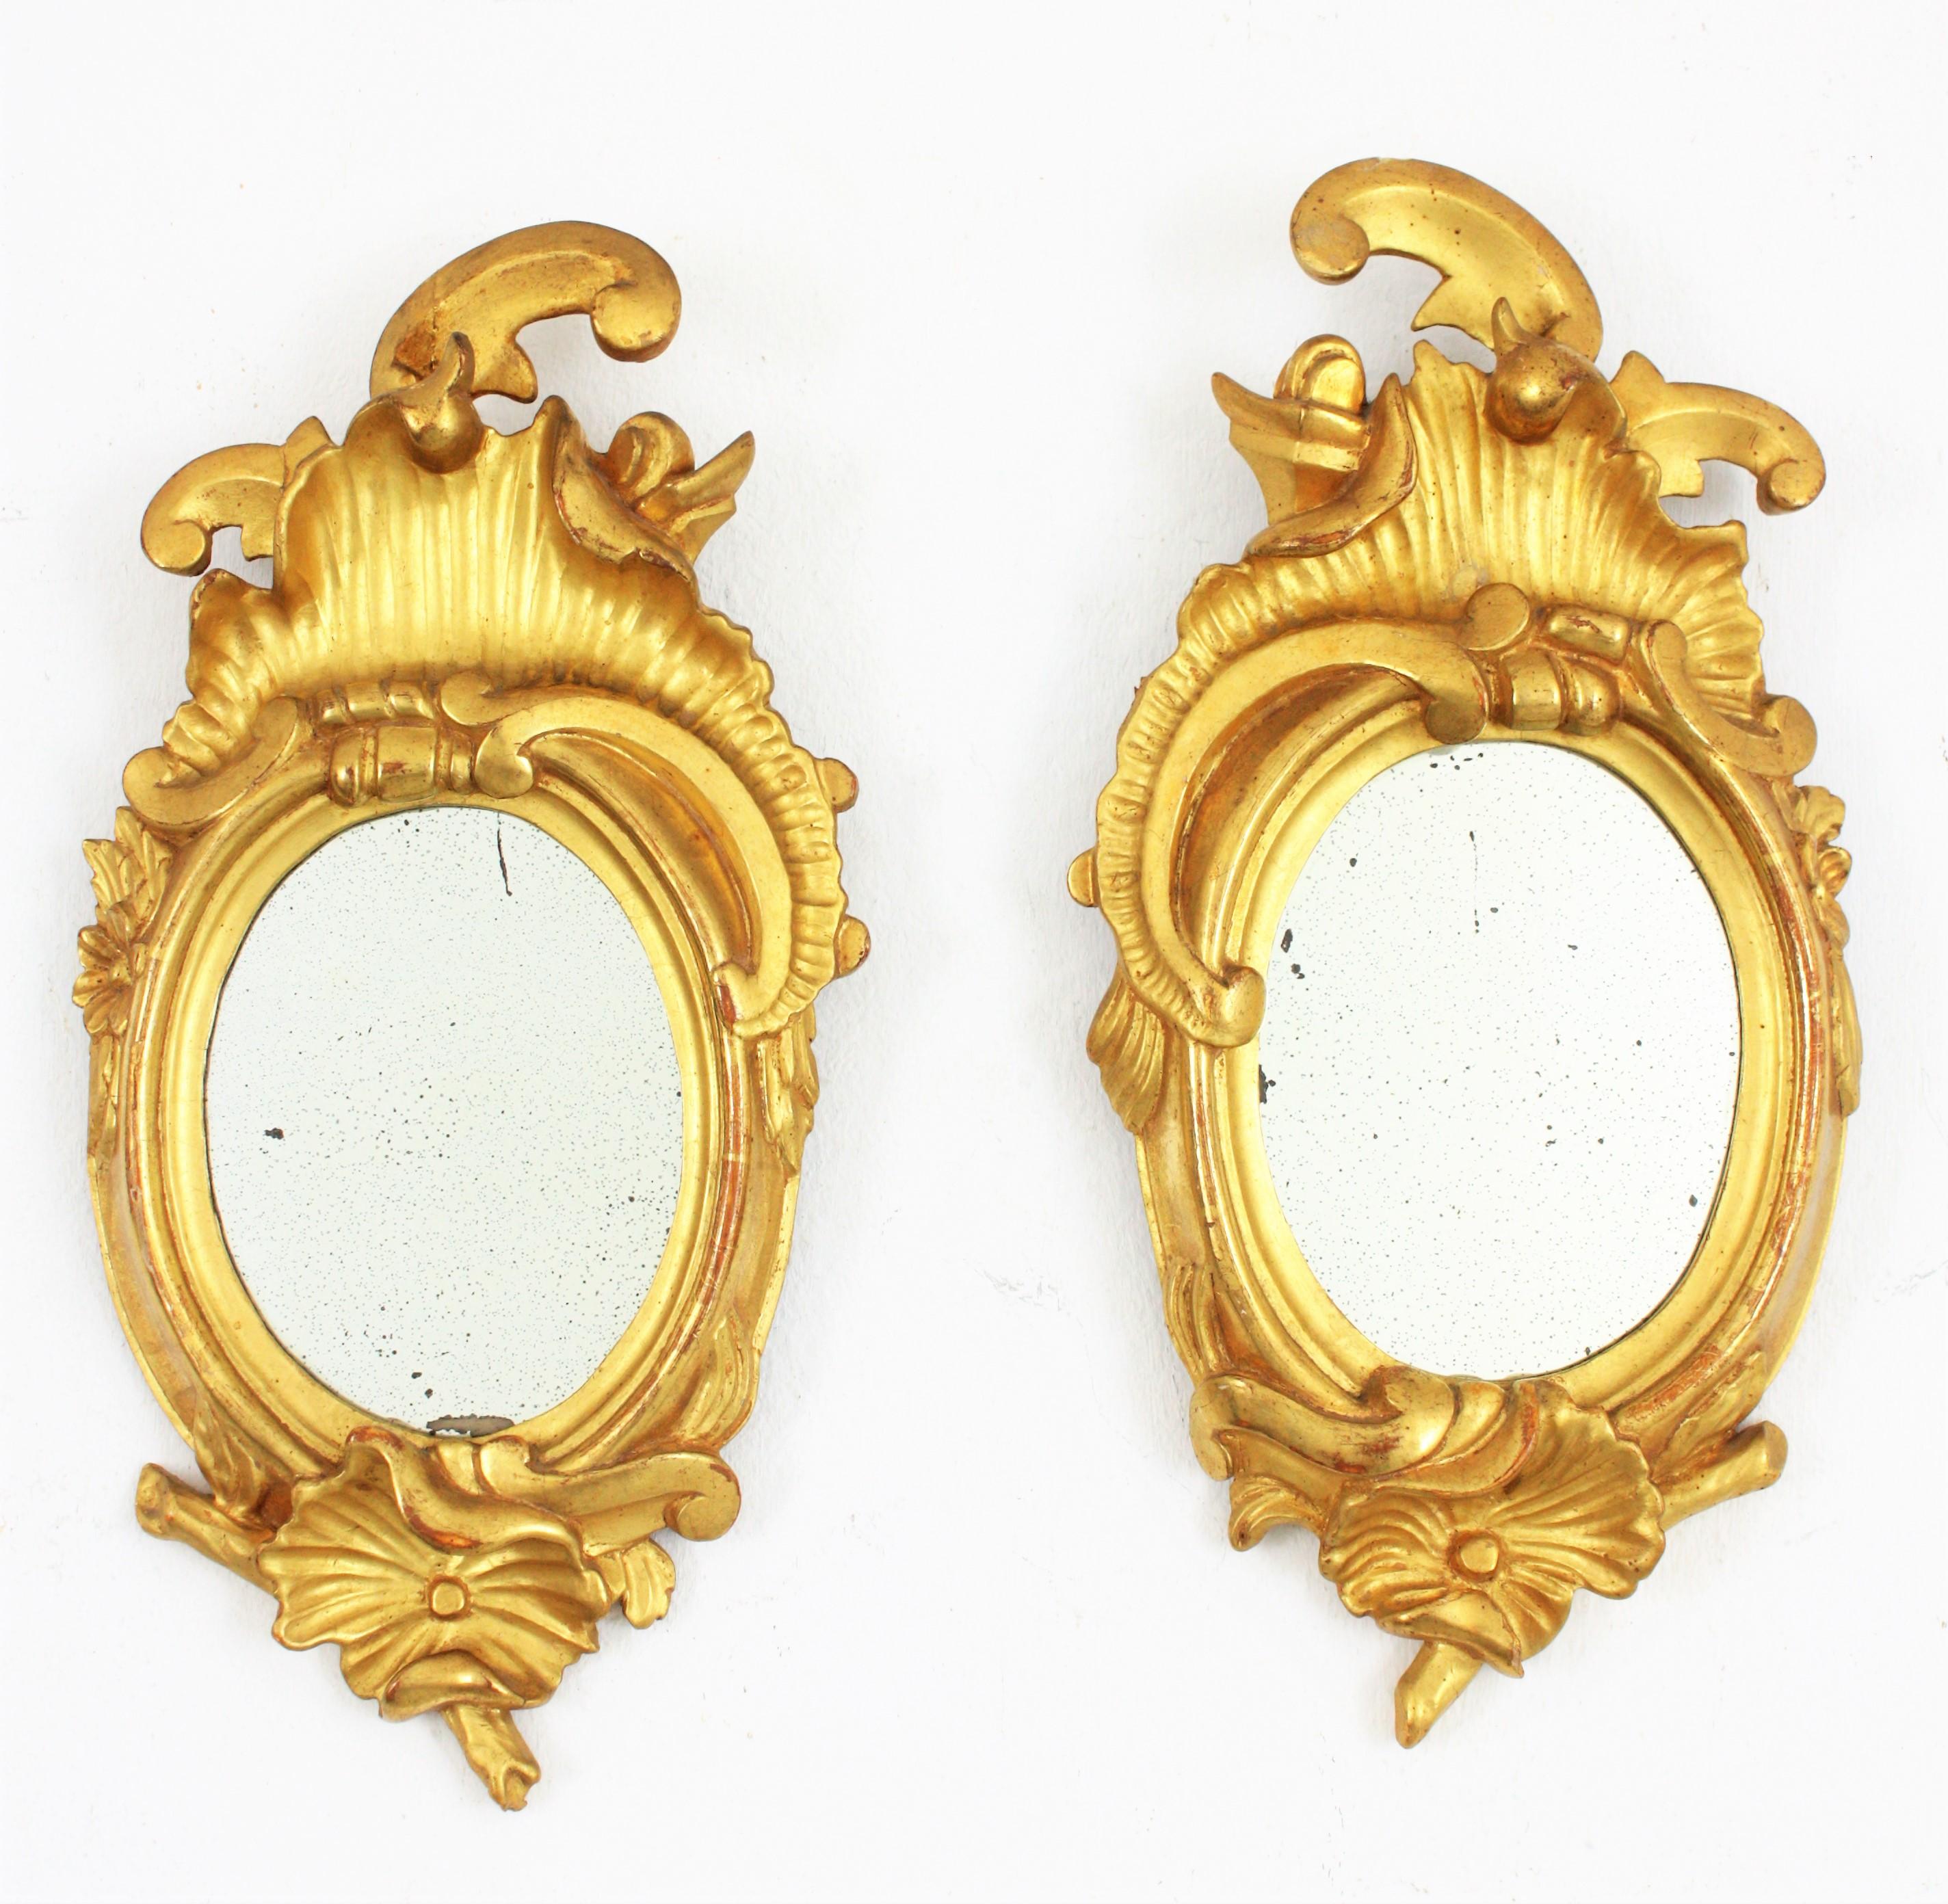 Paire de petits miroirs Art Nouveau en bois doré à feuilles d'or à gauche et à droite
Paire de petits miroirs gauche et droit exquis et richement sculptés. Bois sculpté, recouvert de gesso et d'une finition à la feuille d'or 24 carats. 
Ces miroirs